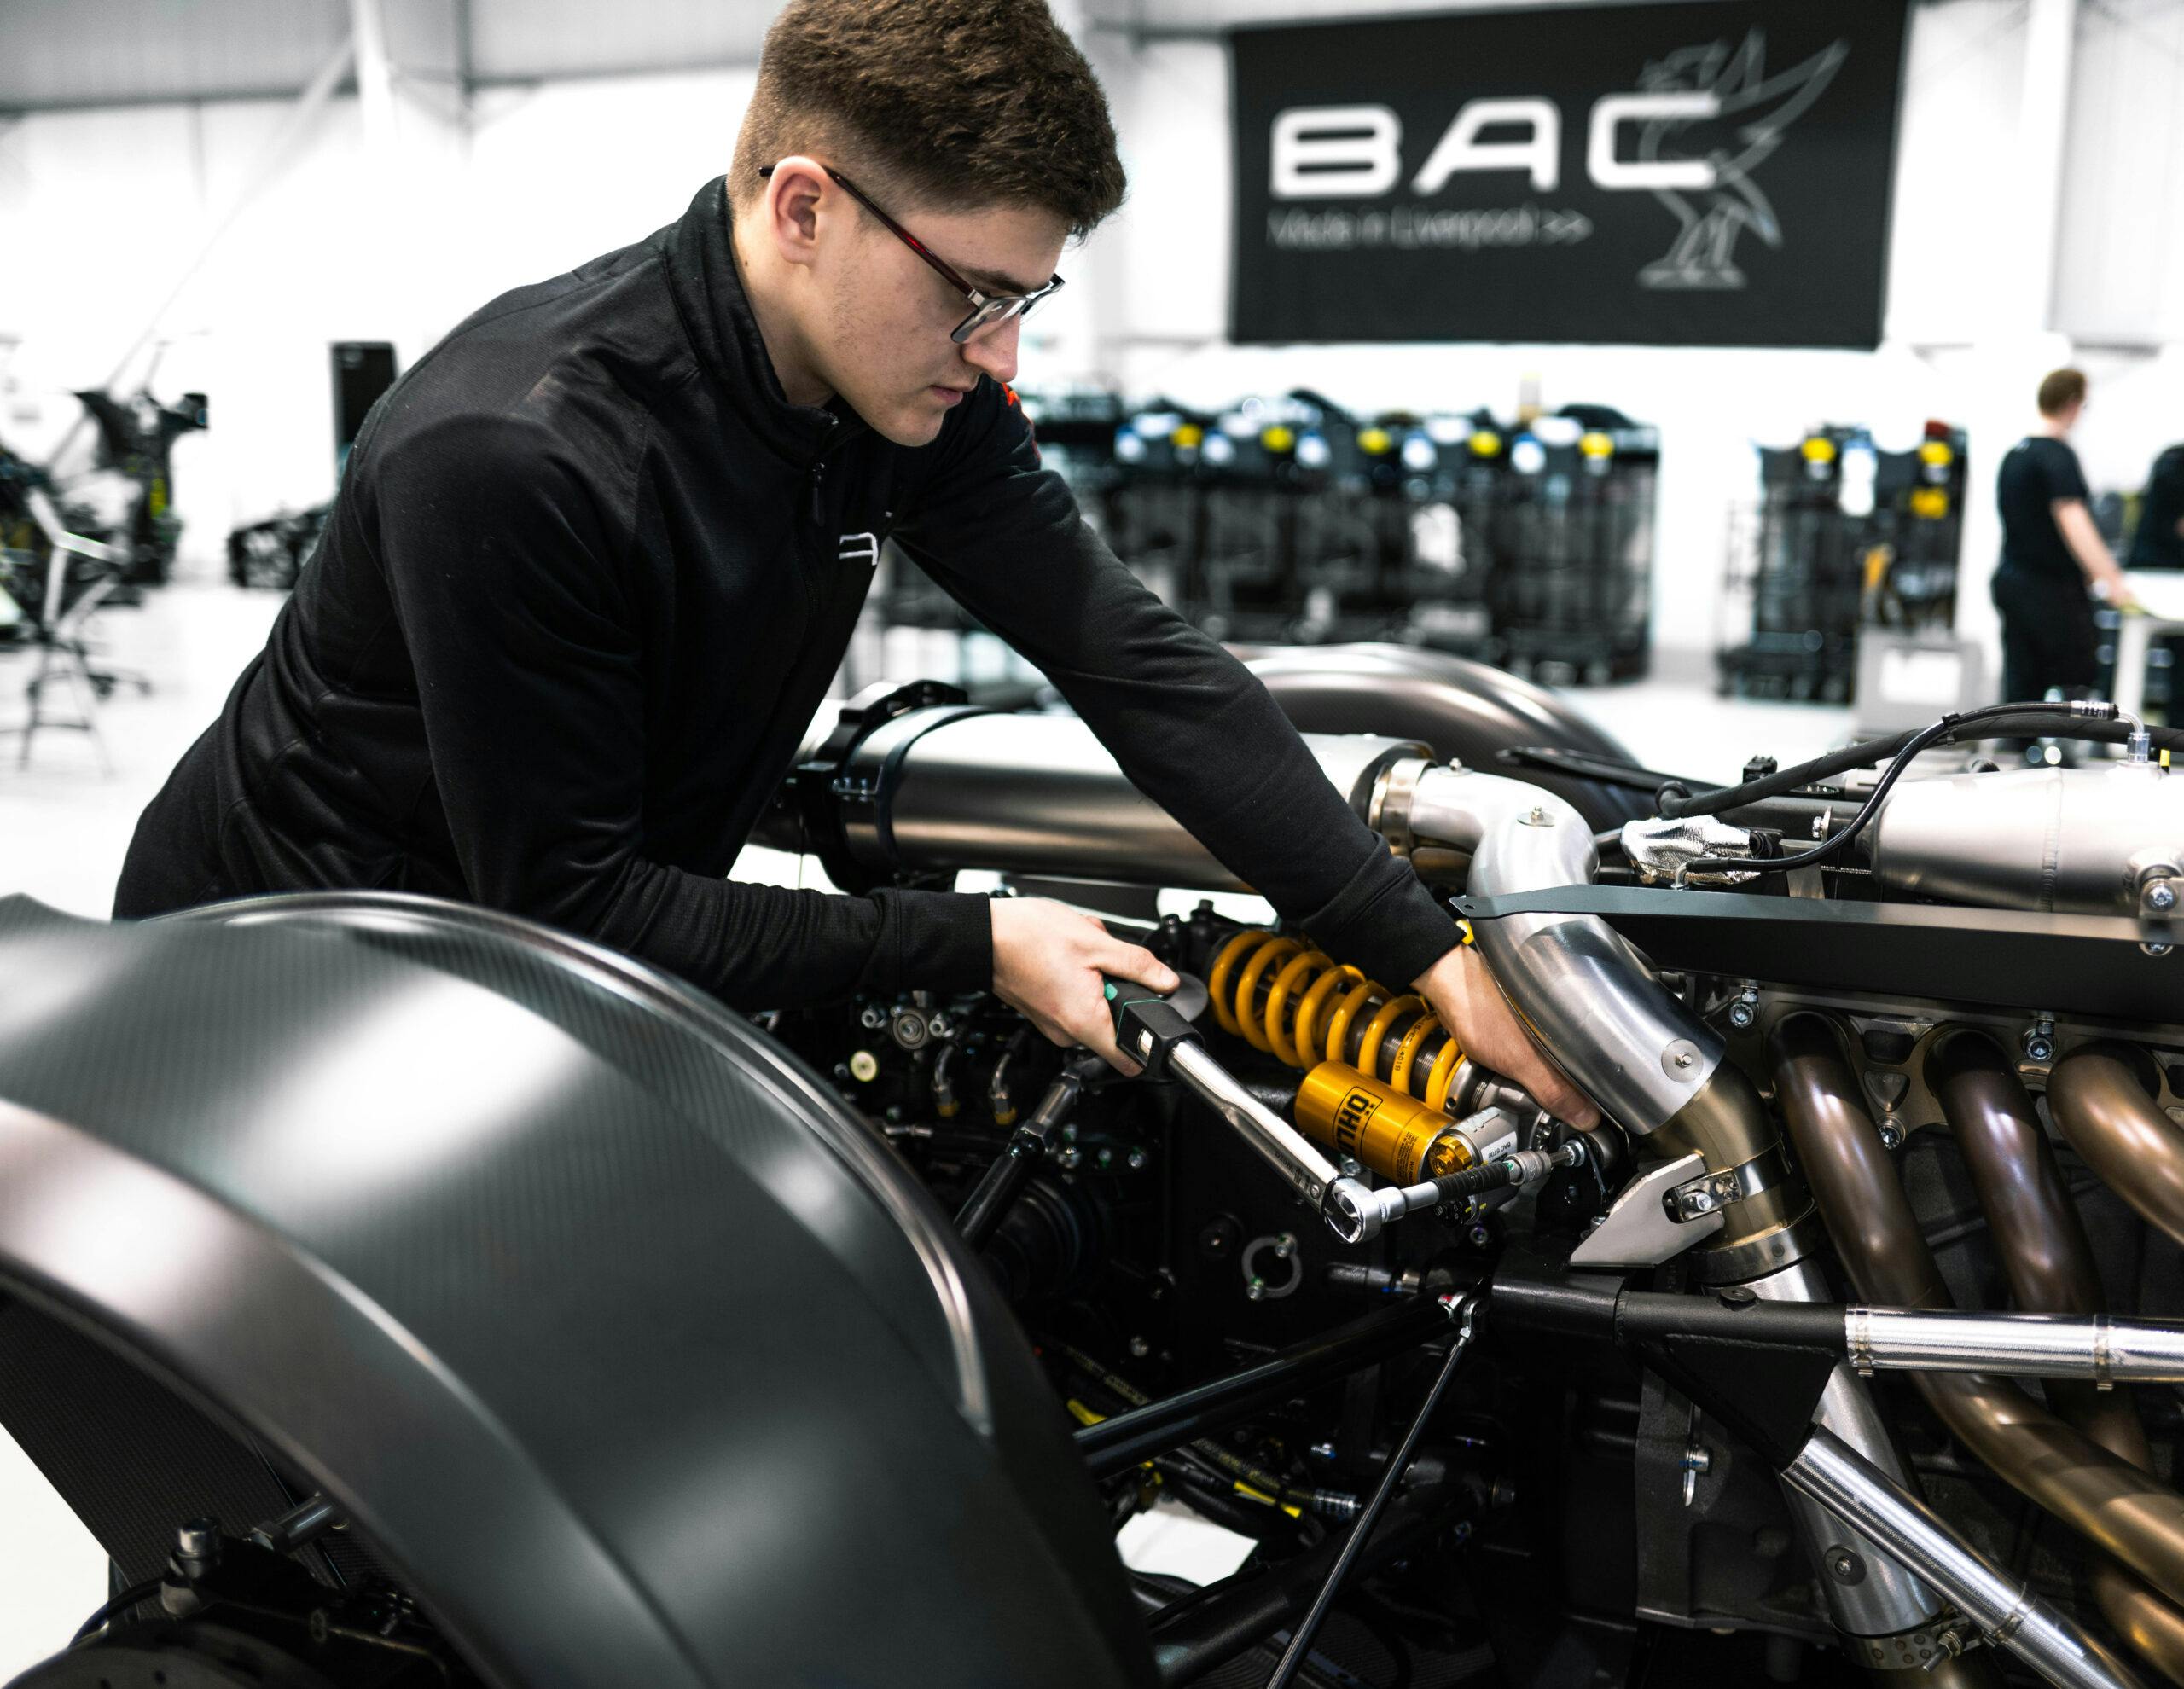 BAC factory suspension torque